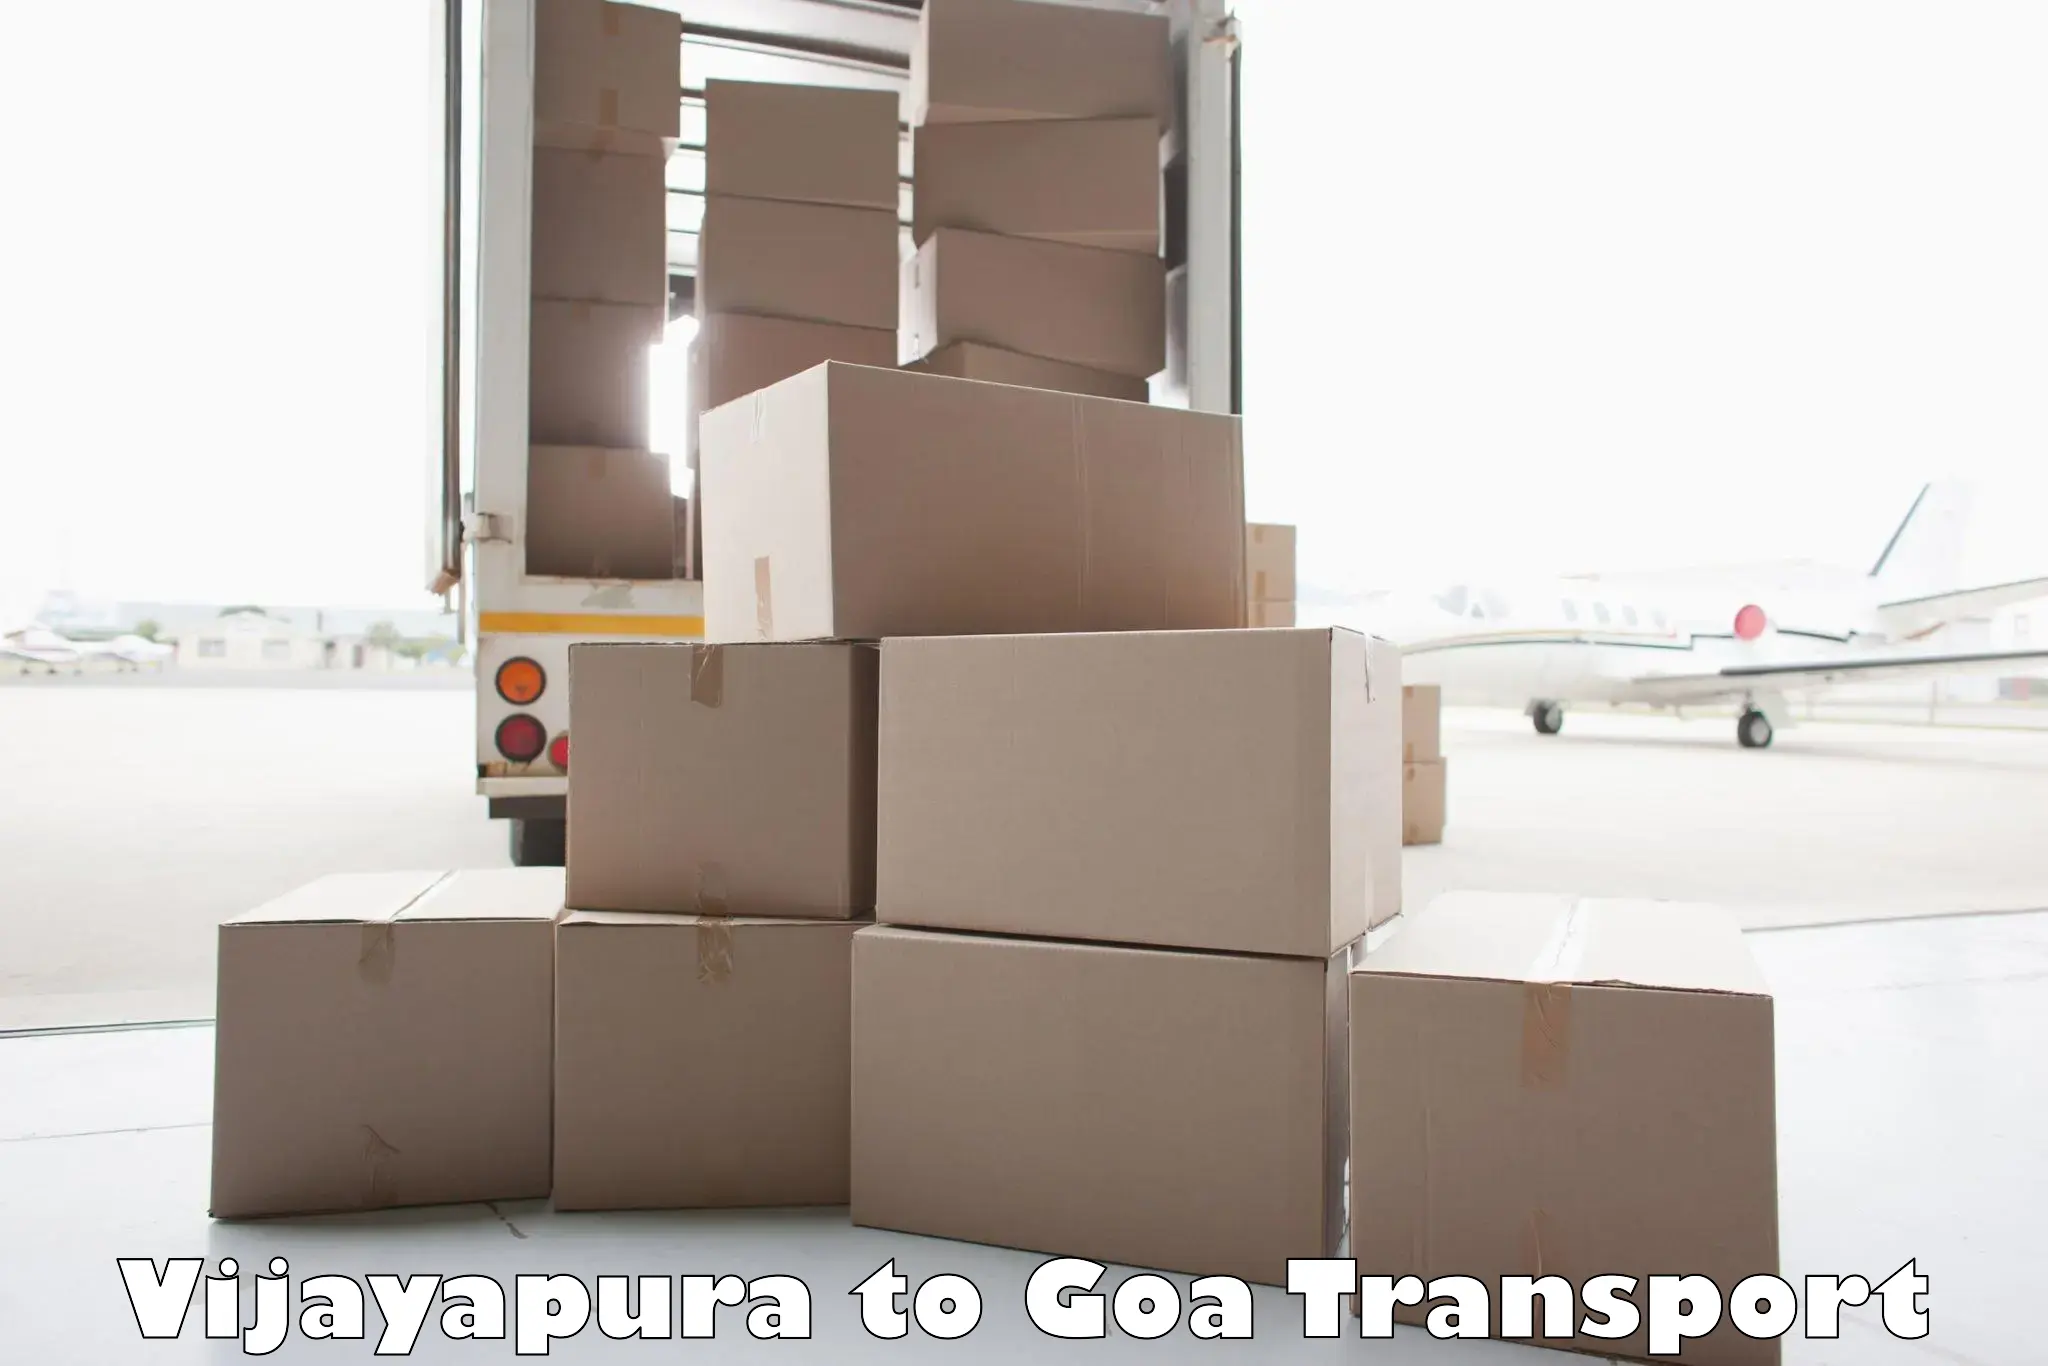 Furniture transport service Vijayapura to Bardez